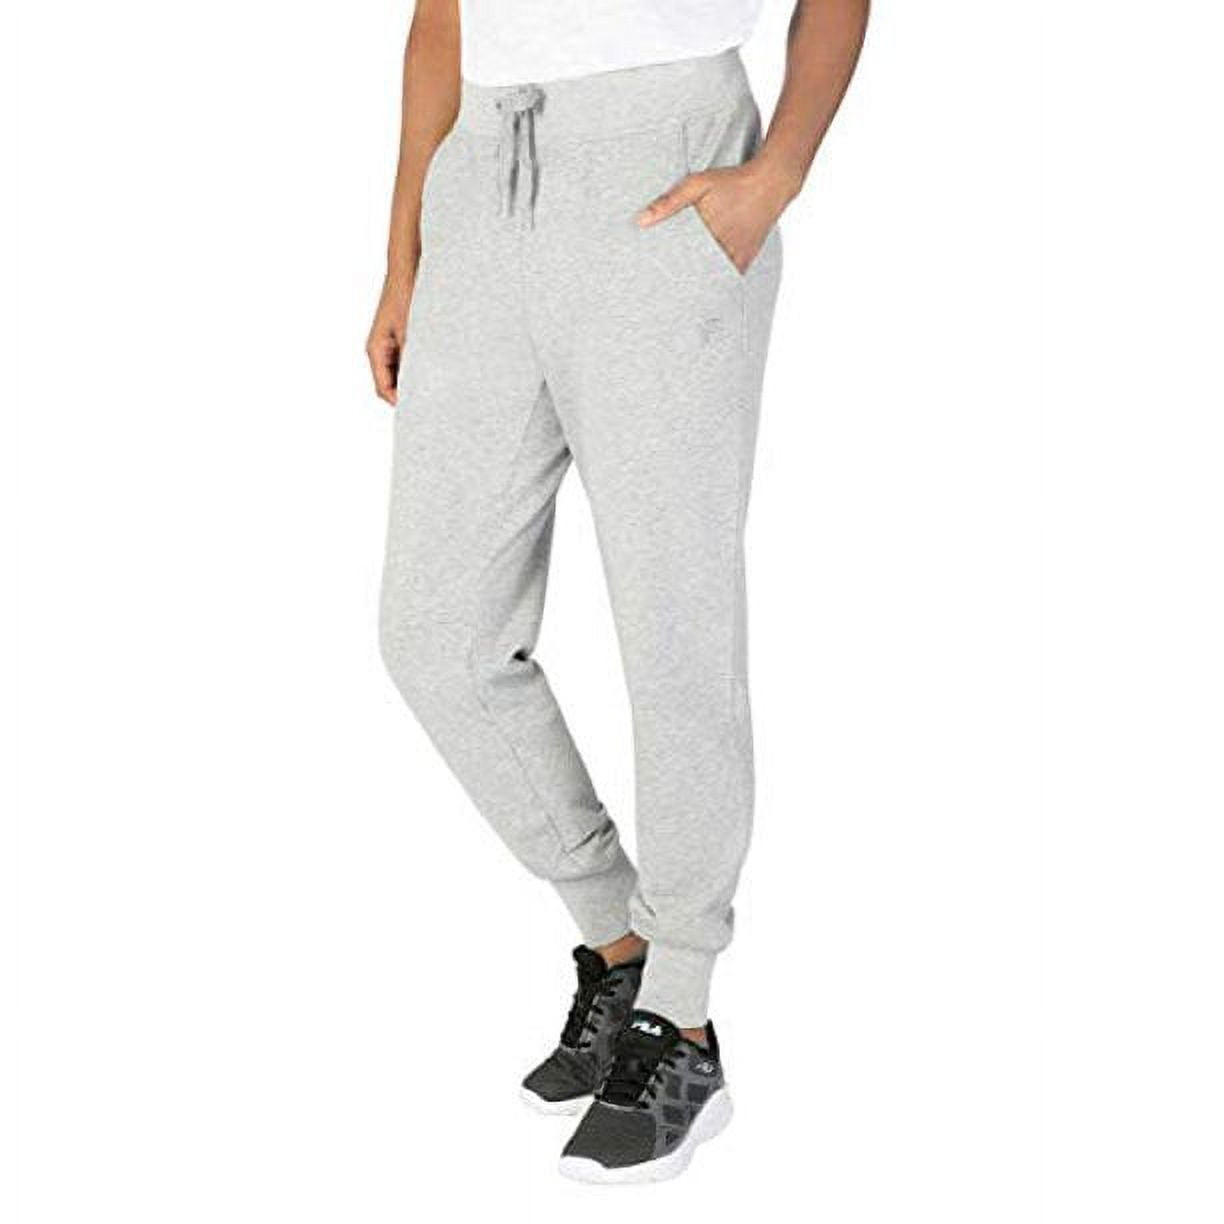 Buy Fila women sportswear fit drawstring sweatpants grey Online